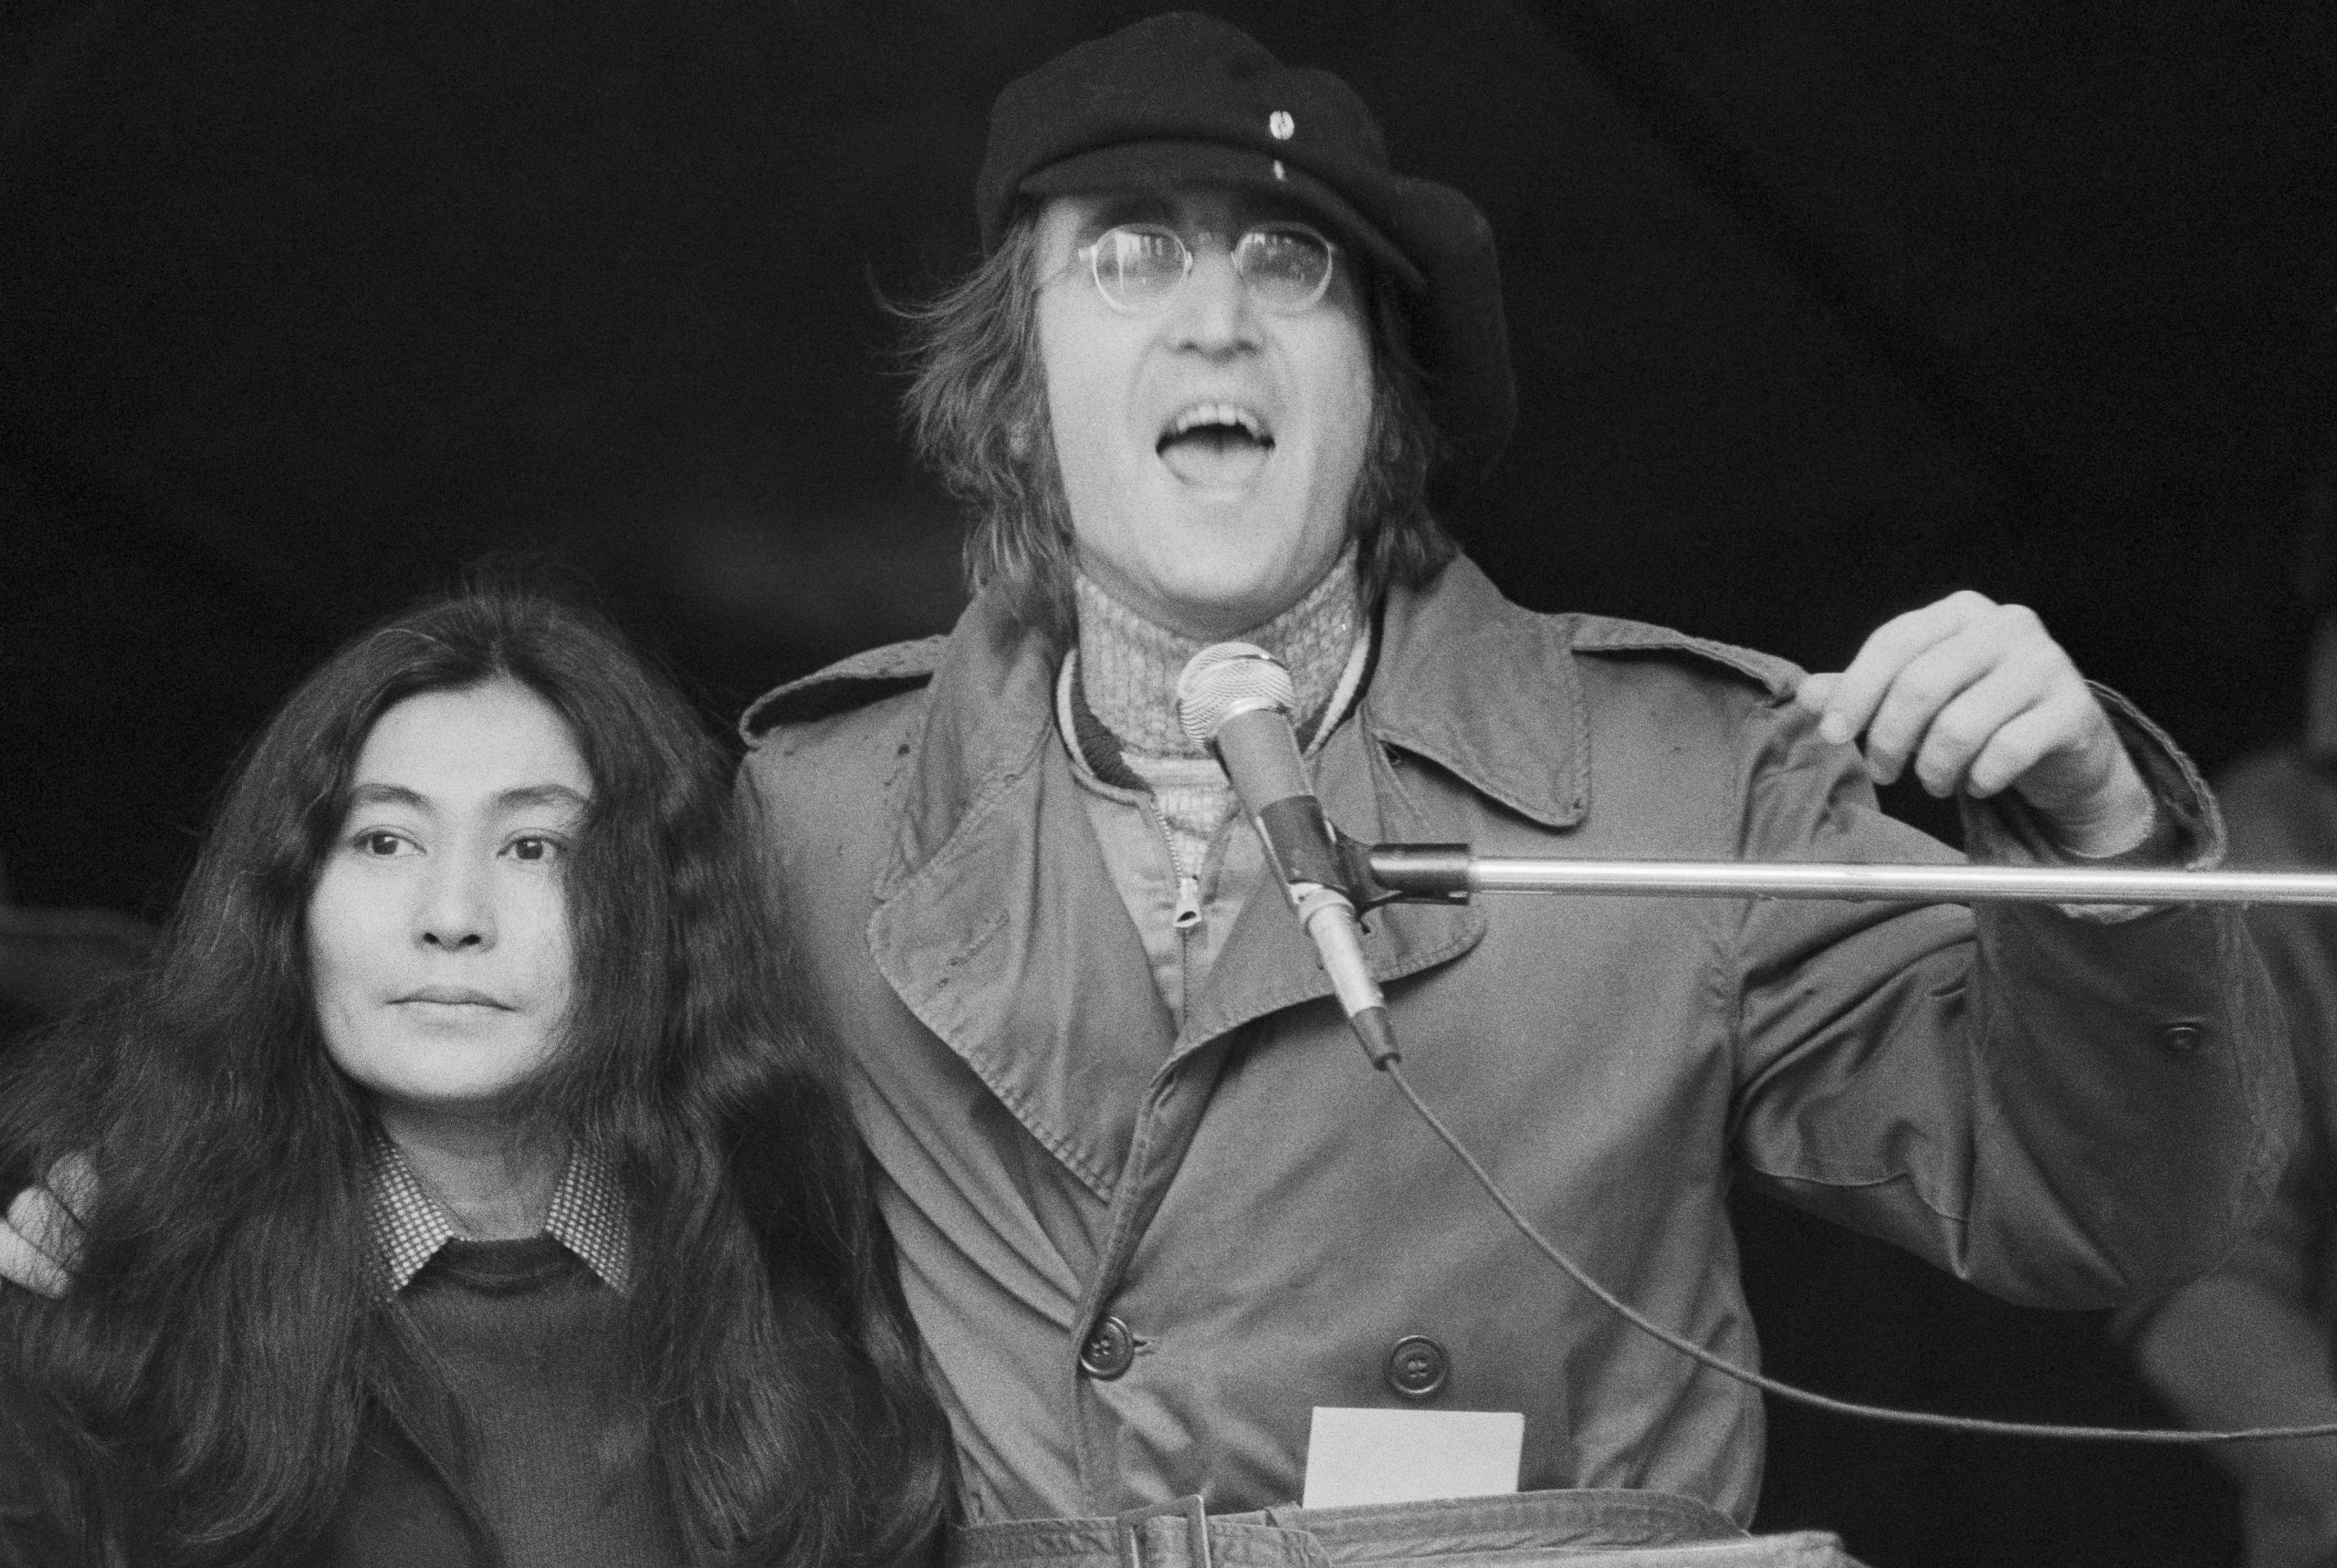 La historia de "Happy Xmas (War is Over)" de John Lennon y su mensaje contra la guerra